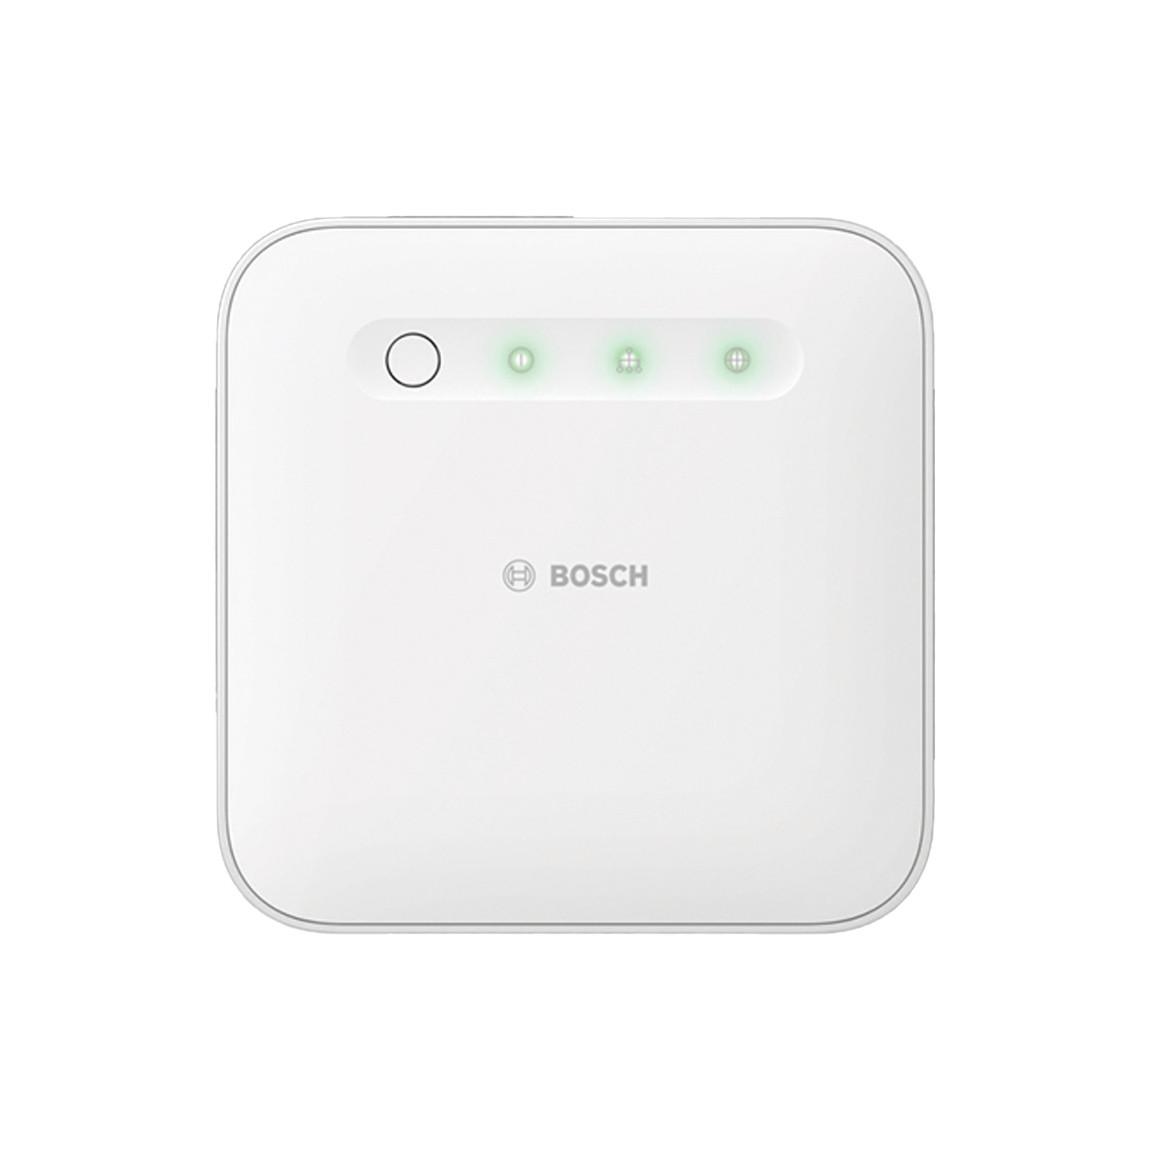 Bosch Smart Home - Starter Set Sicherheit_Controller frontal